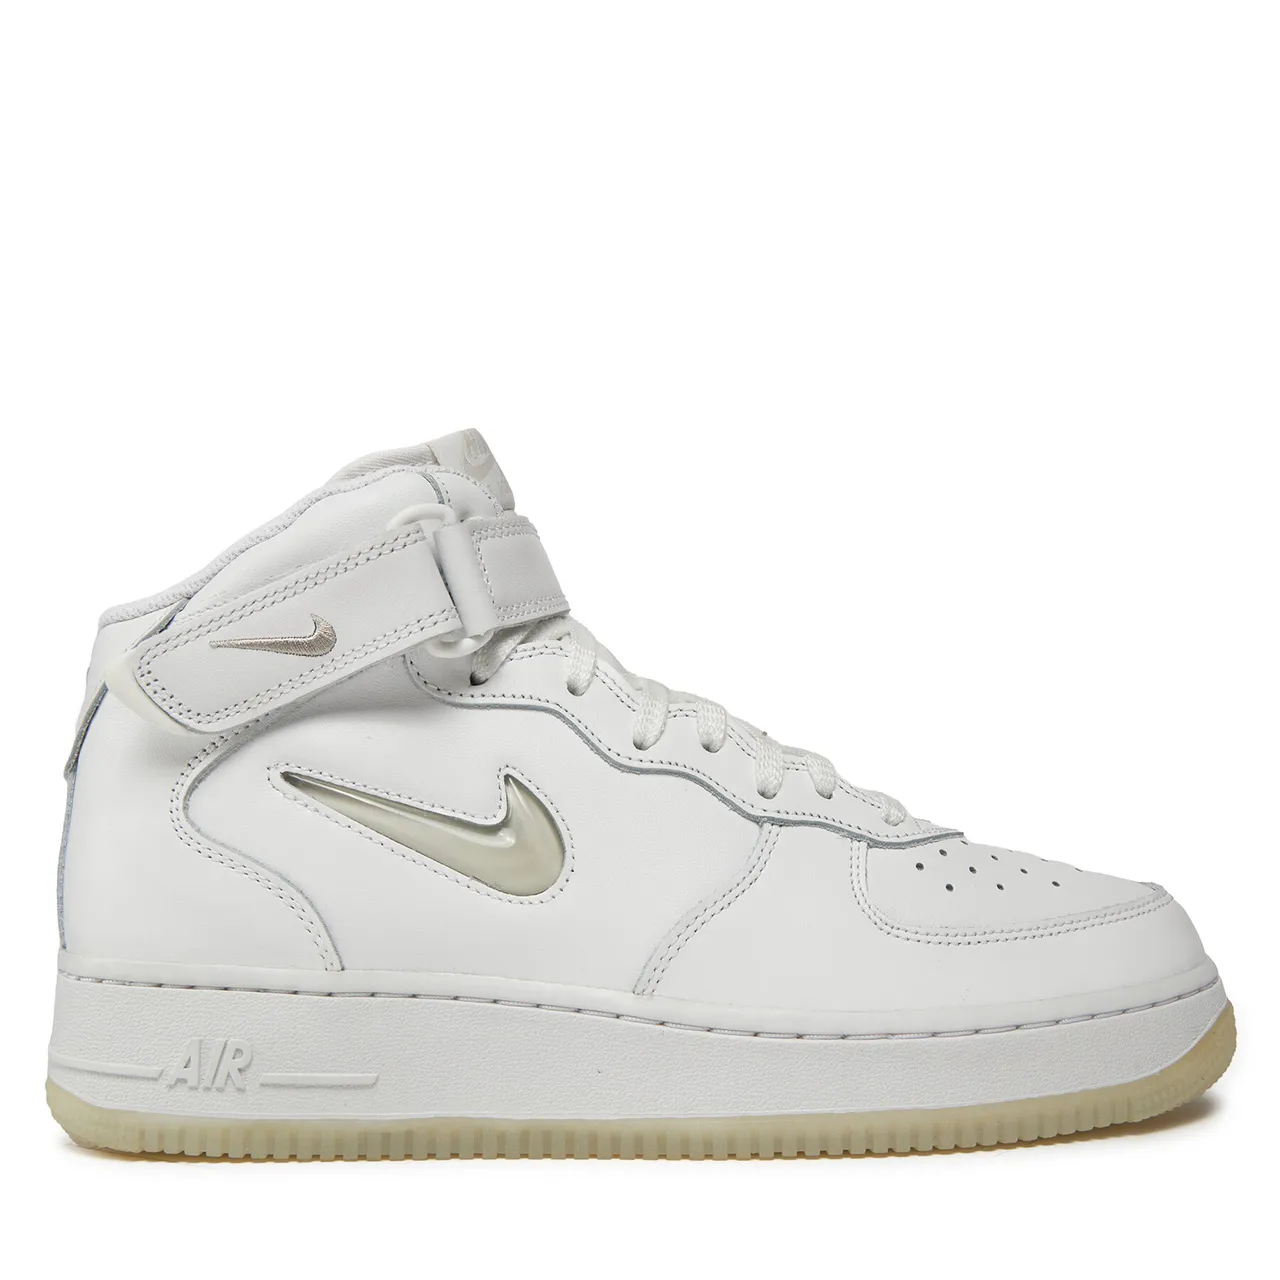 Sneakers Nike Air Force 1 Mid '07 DZ2672 101 Weiß